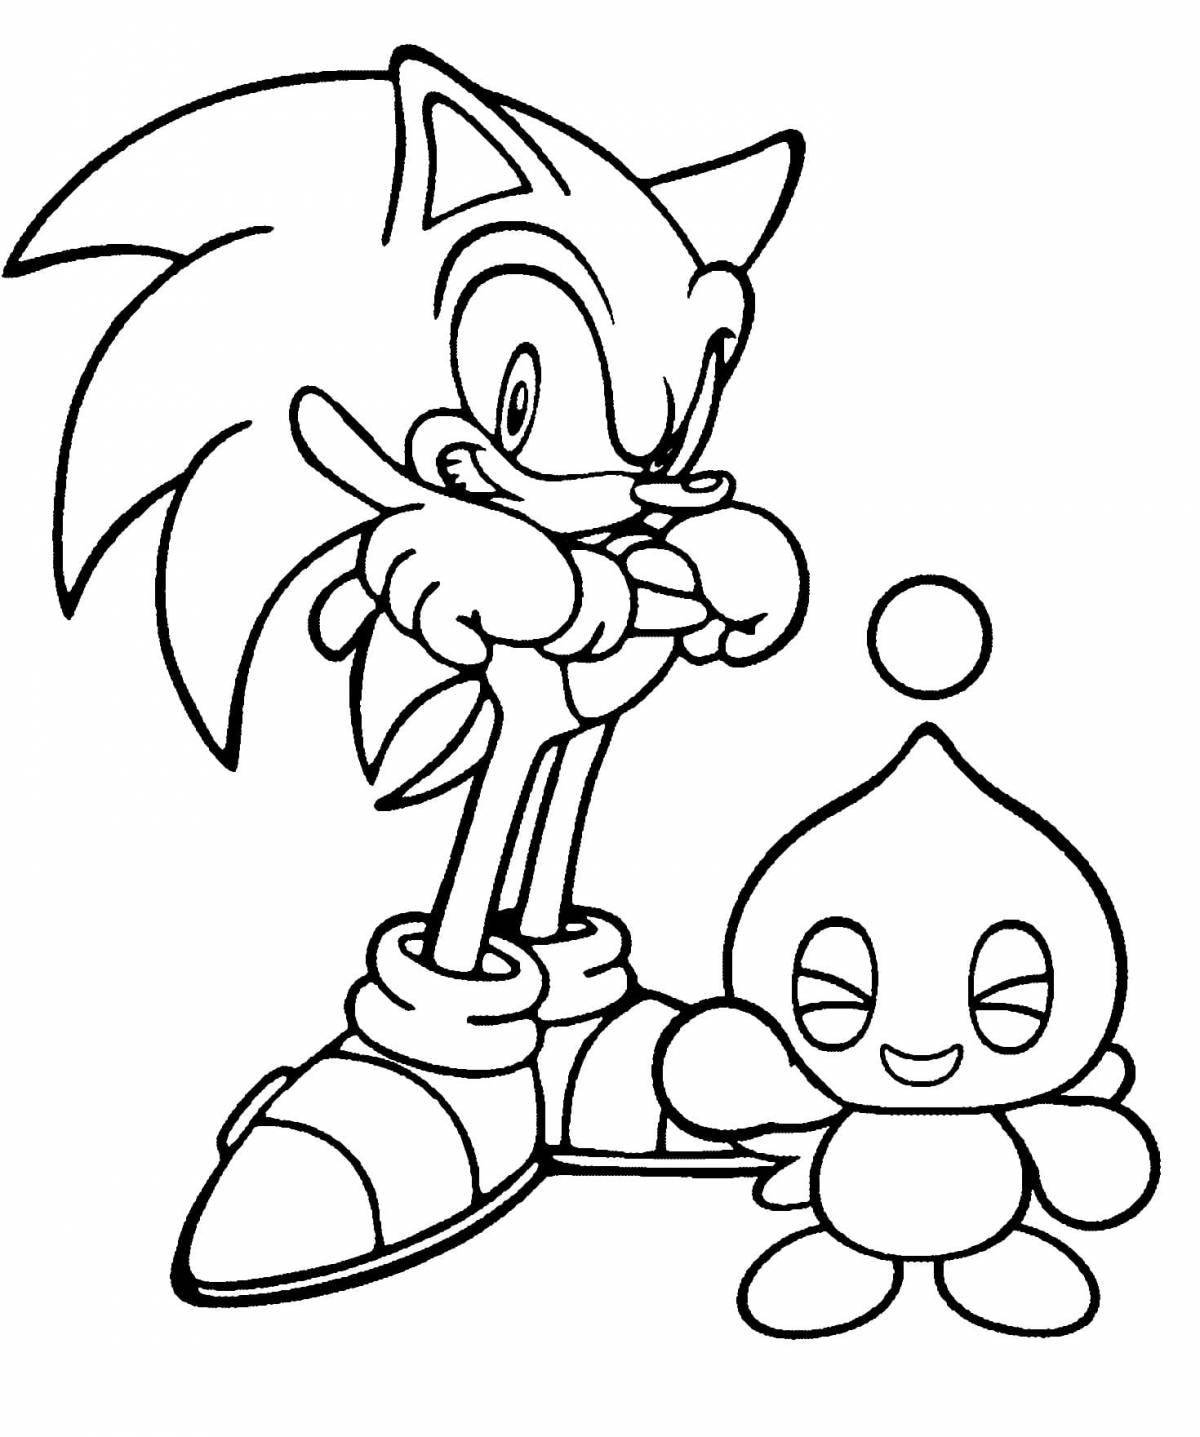 Sonic x fun coloring book